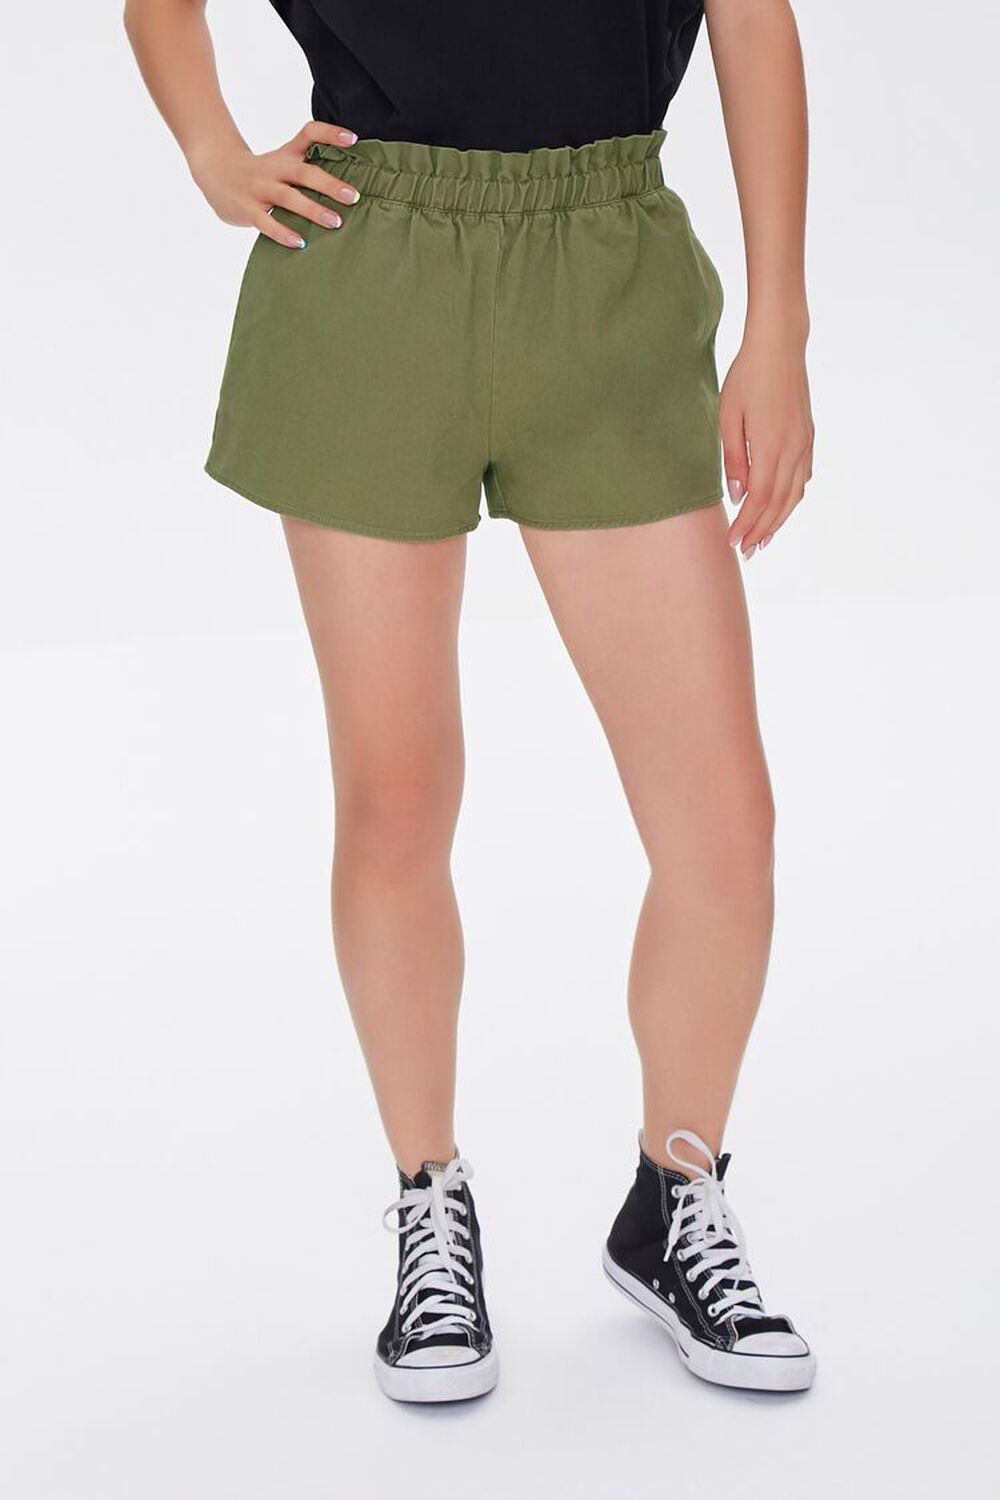 OLIVE Twill Ruffled Shorts, image 2